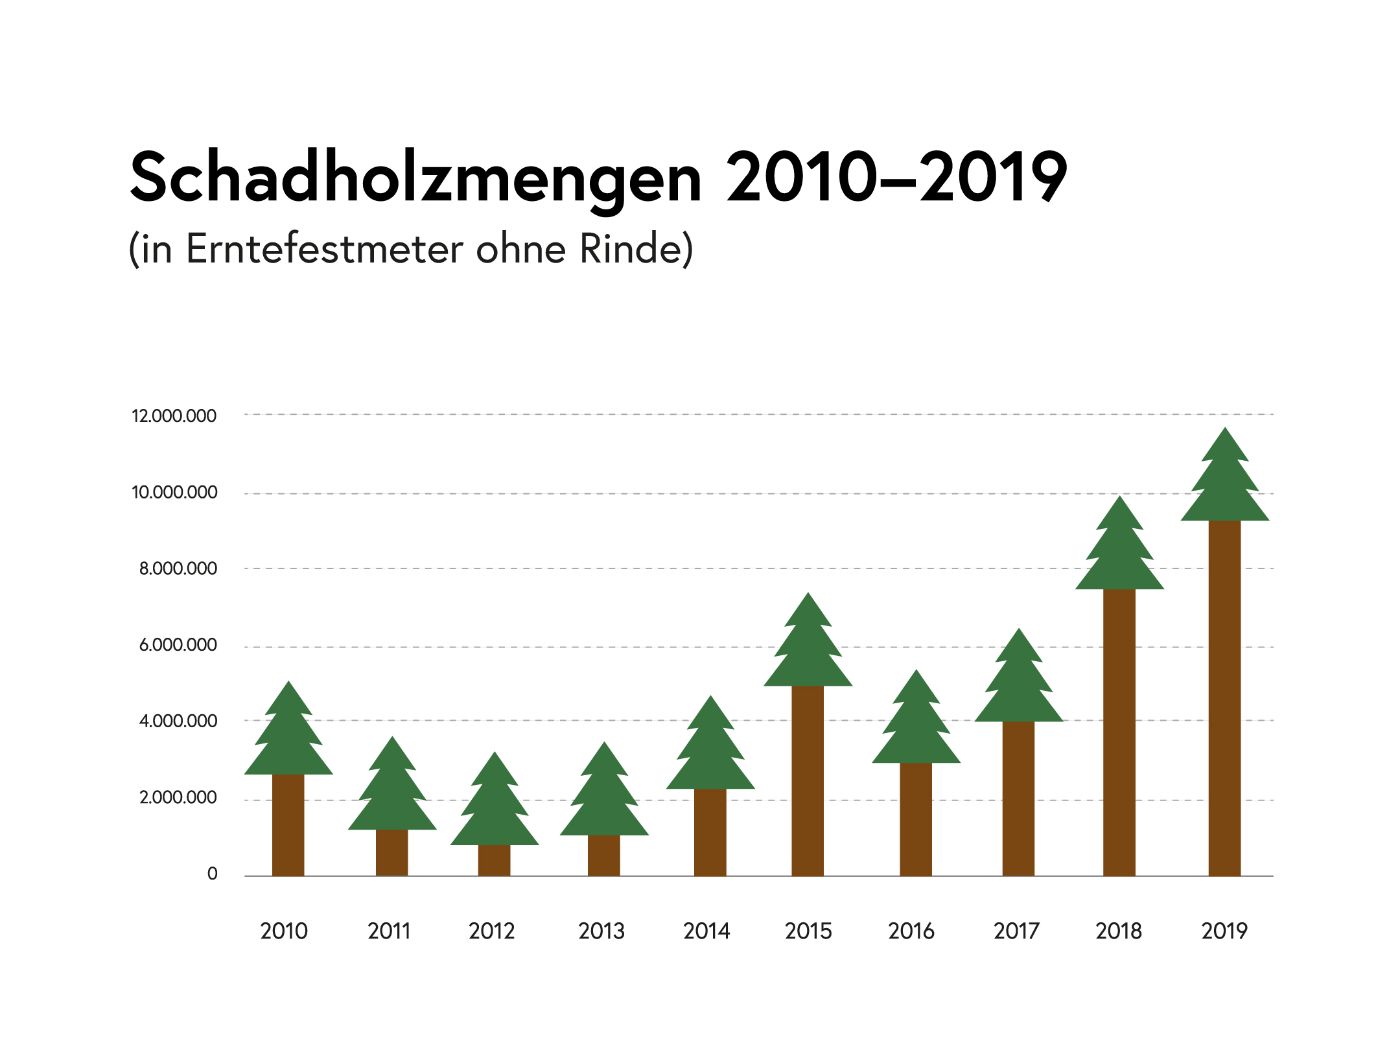 Schadholzmengen 2010 bis 2019 - Infografik: Insgesamt zeigt sich seit 2010 zunächst ein leicht abfallender, dann ein recht kontinuierlich ansteigender Trend. 2015 ist ein Außreißer nach oben. im Jahr 2019 liegt die Schadholzmenge bei knapp 12 Millionen Erntefestmeter, während sie 2010 noch bei etwa 5 Millionen lag.